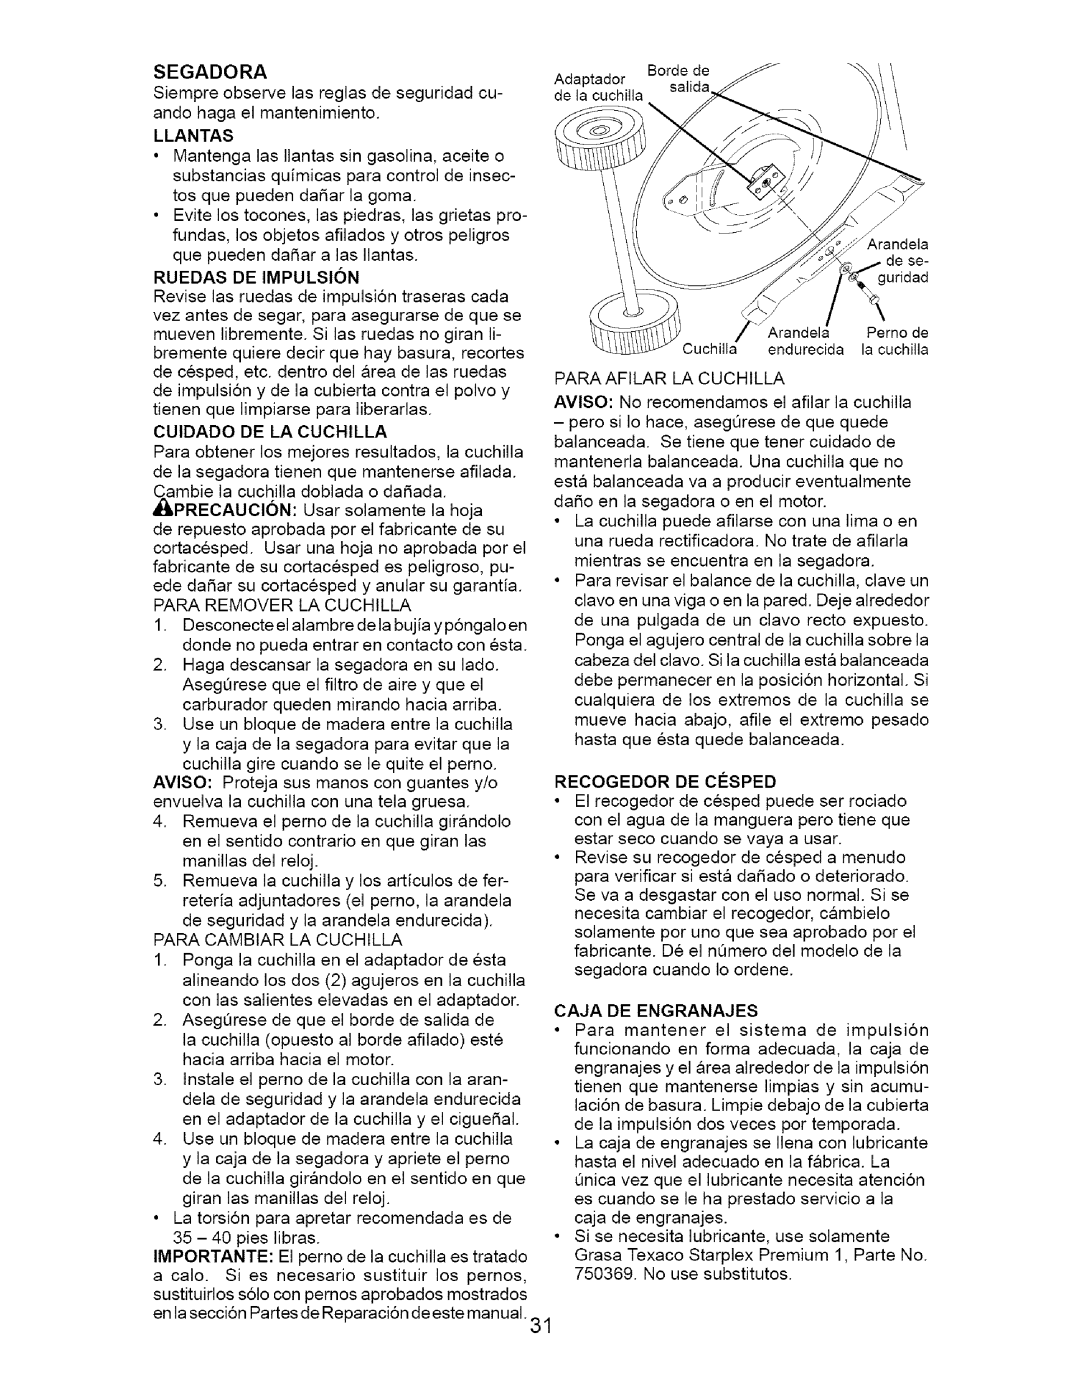 Craftsman 917.377011 owner manual Llantas, Ruedas De Impulsion, Recogedor De Cesped, Caja De Engranajes 